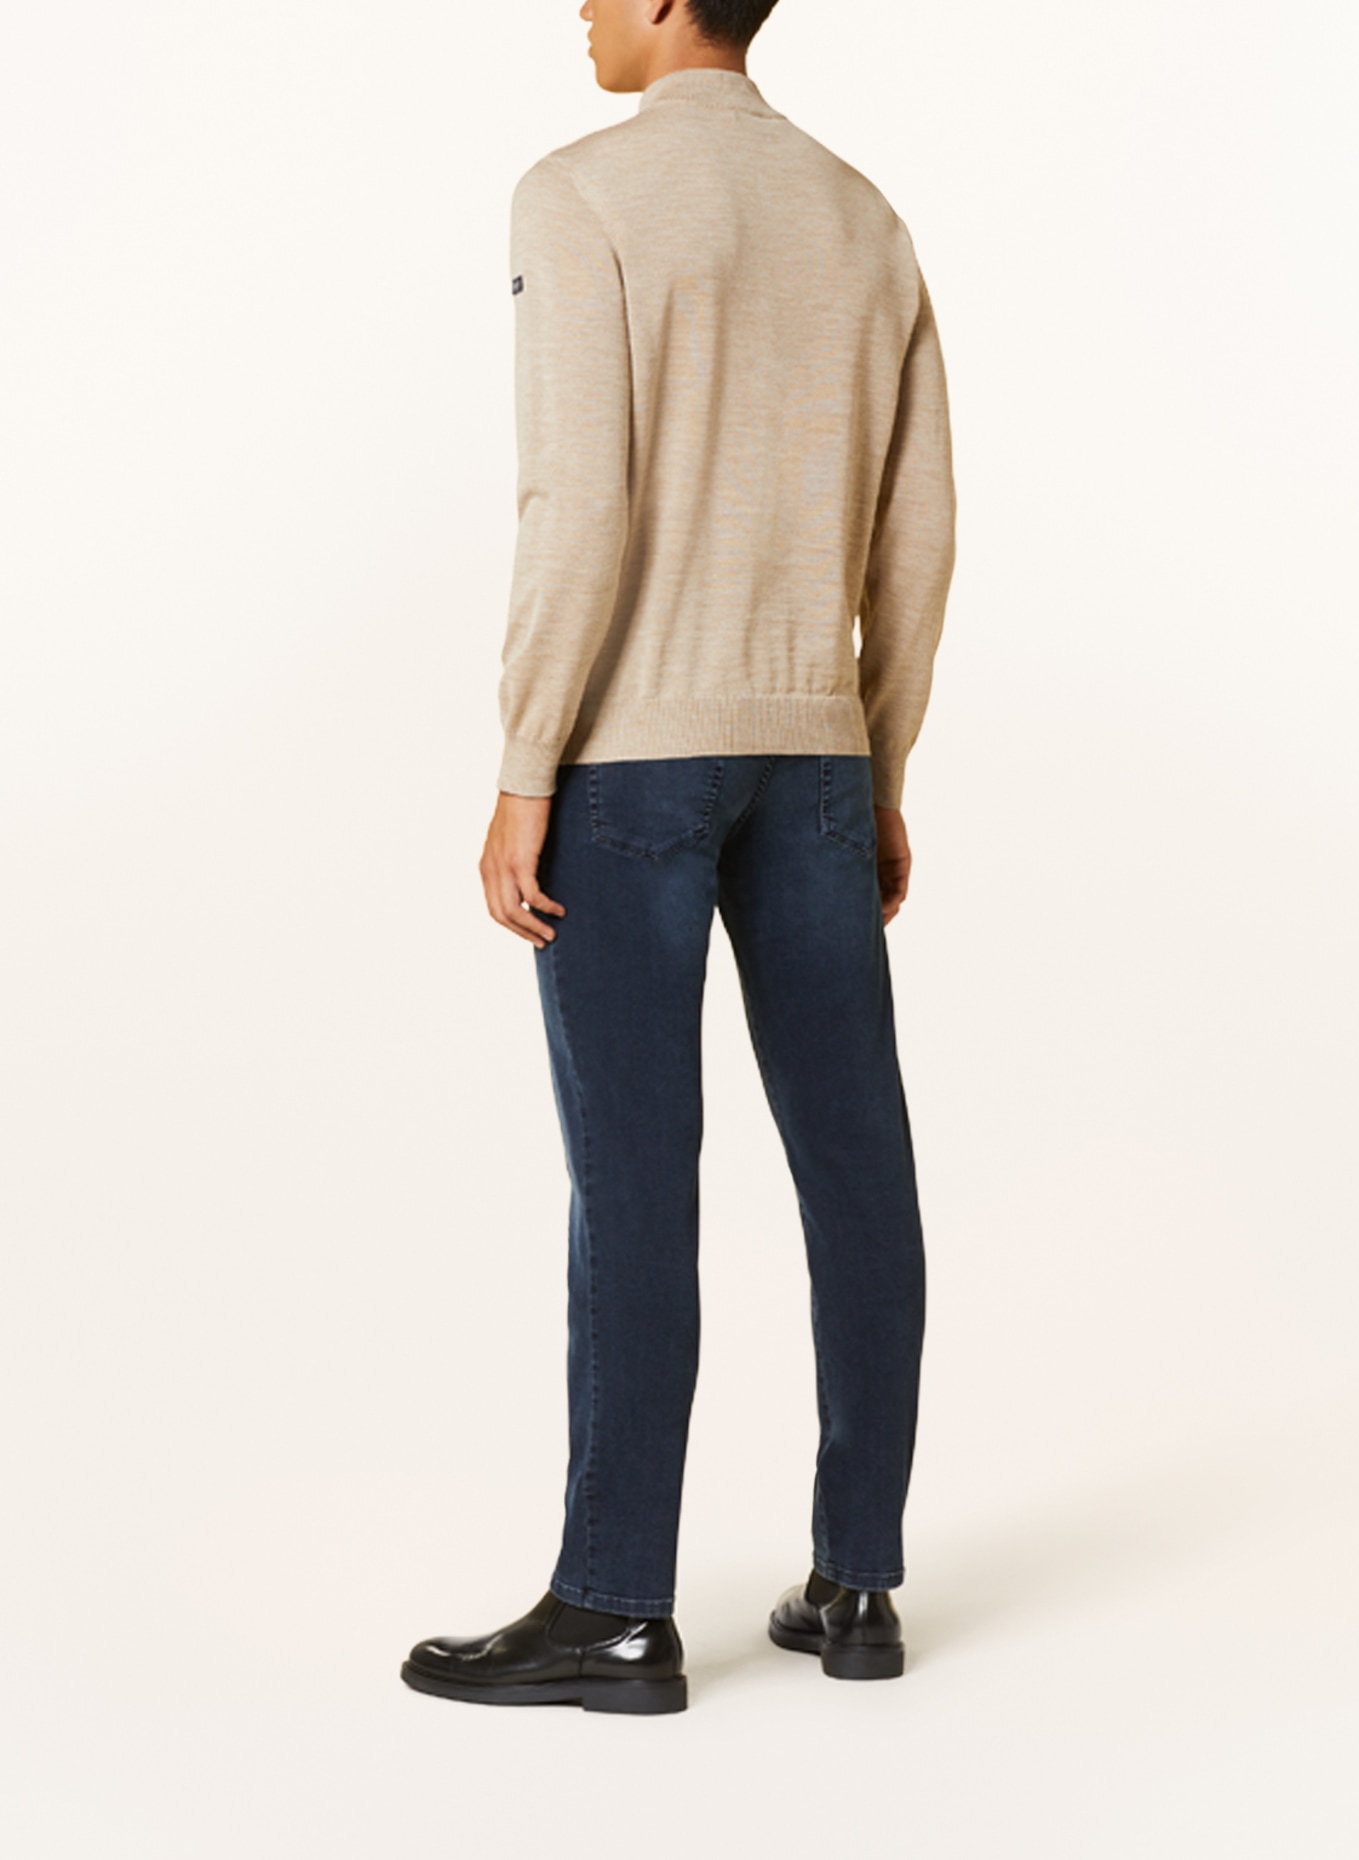 MAERZ MUENCHEN Half-zip sweater, Color: BEIGE (Image 3)